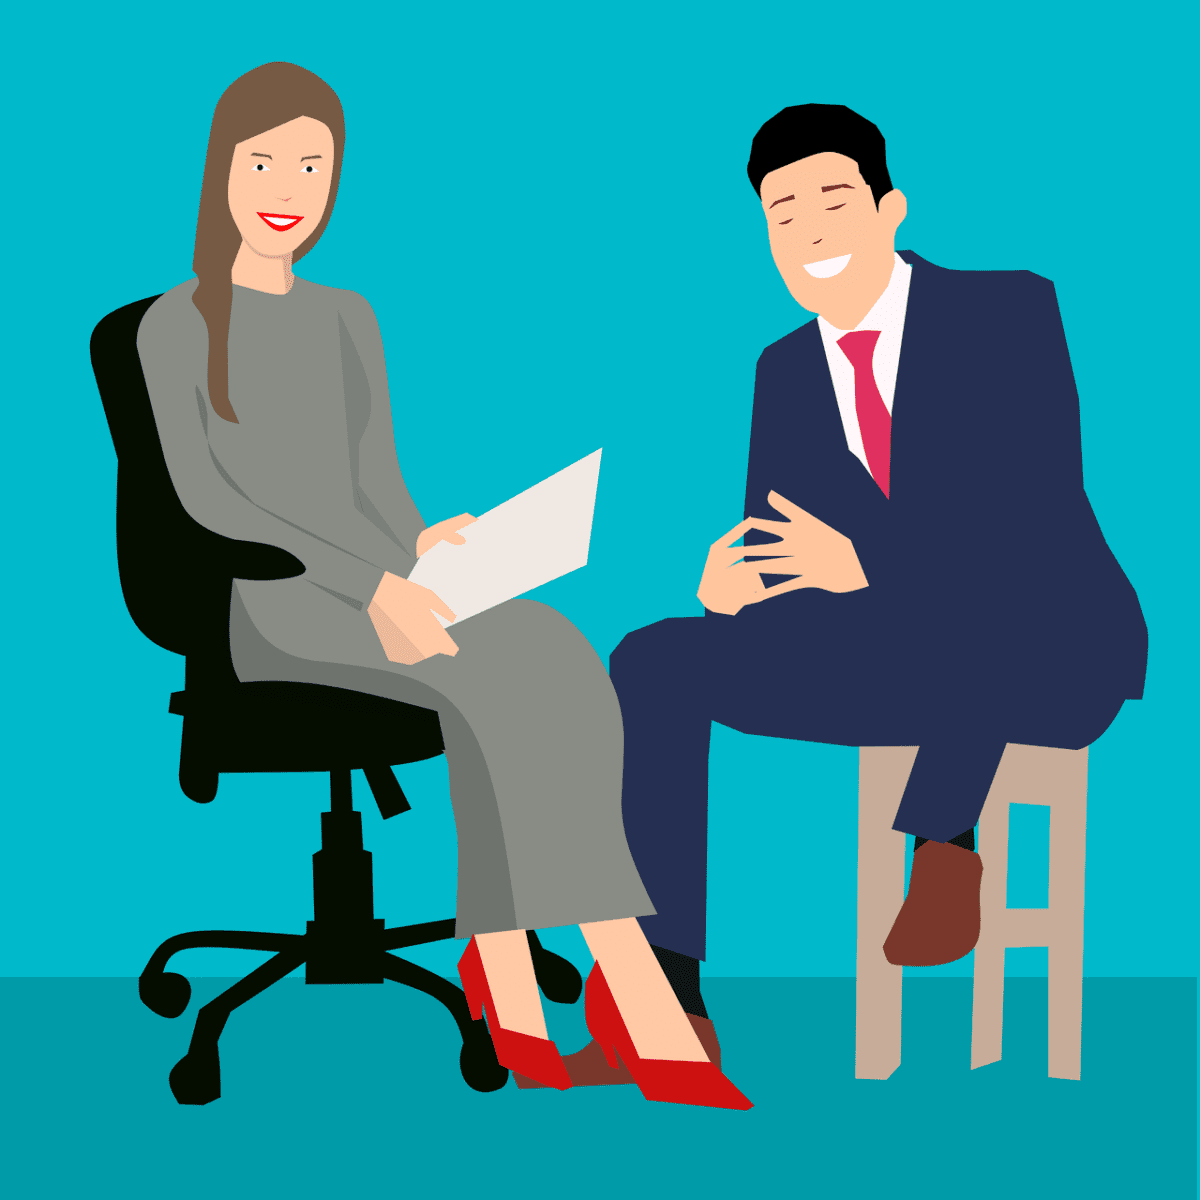 DIe Illustration zeigt einen Mann und eine Frau, die vor einem türkisen Hintergrund sitzen und eine Interview führen. Die Dame hält dabei einen weisen Zettel in der Hand